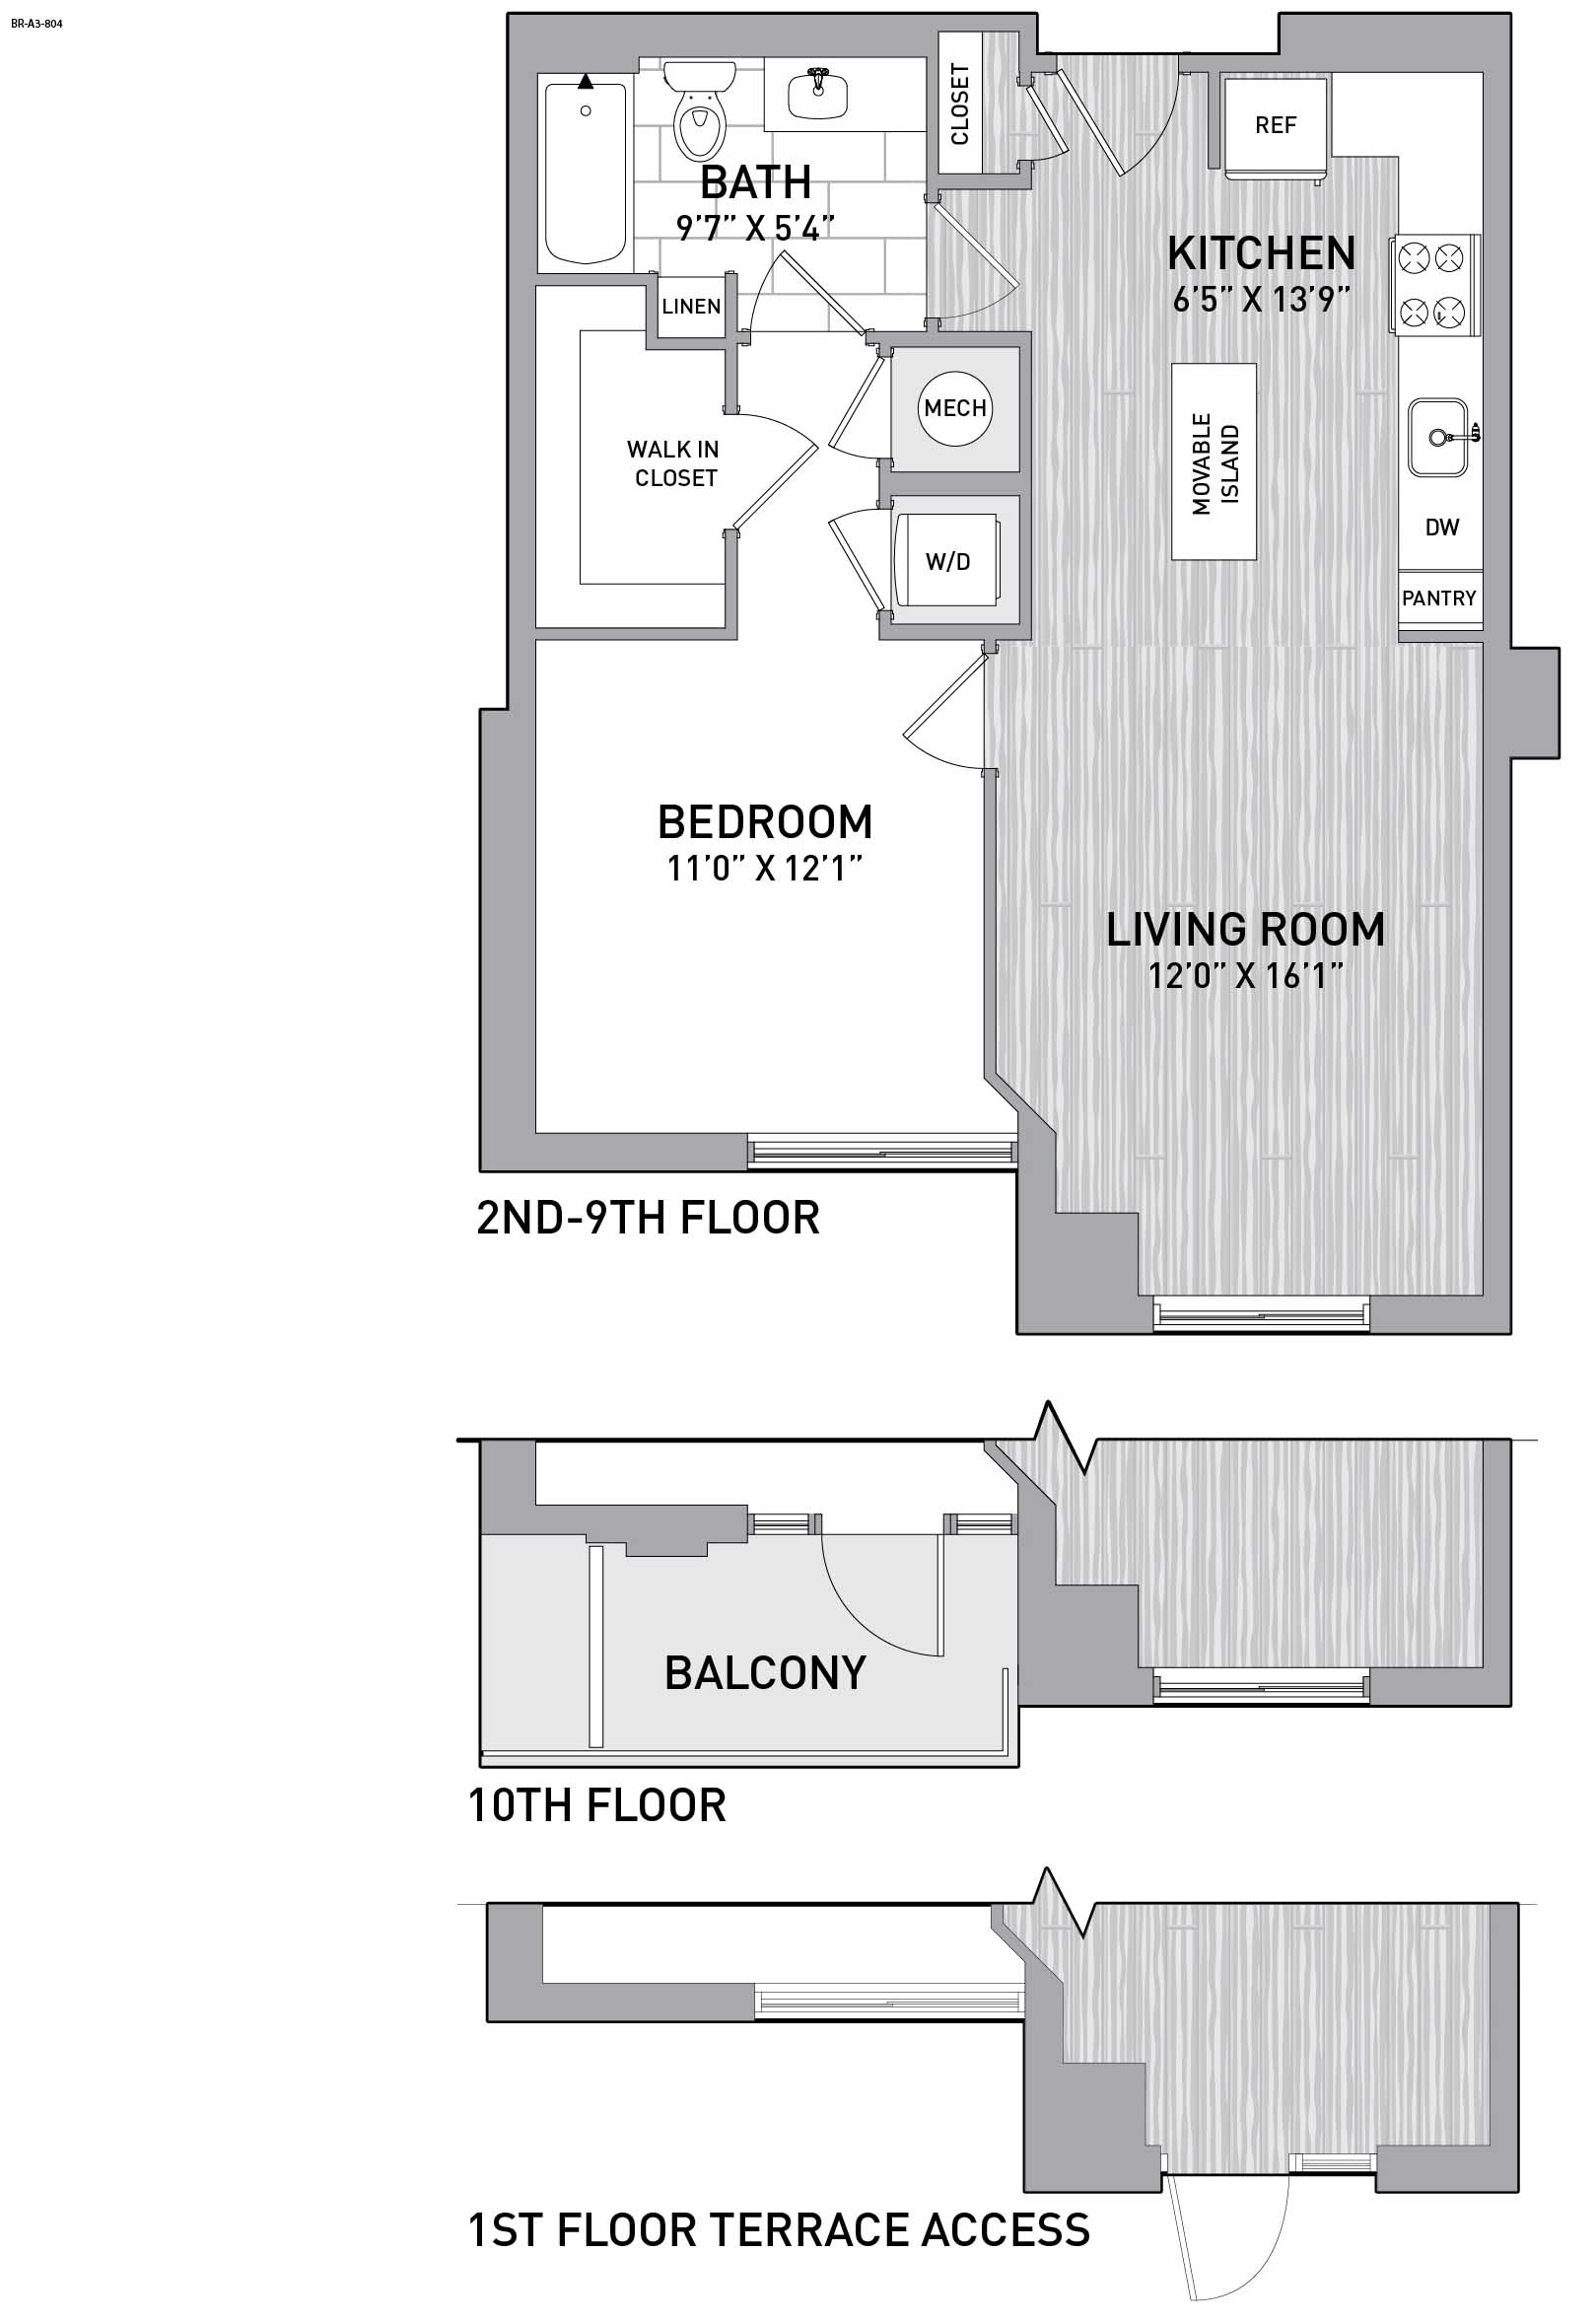 Floorplan Image of unit 151-0309